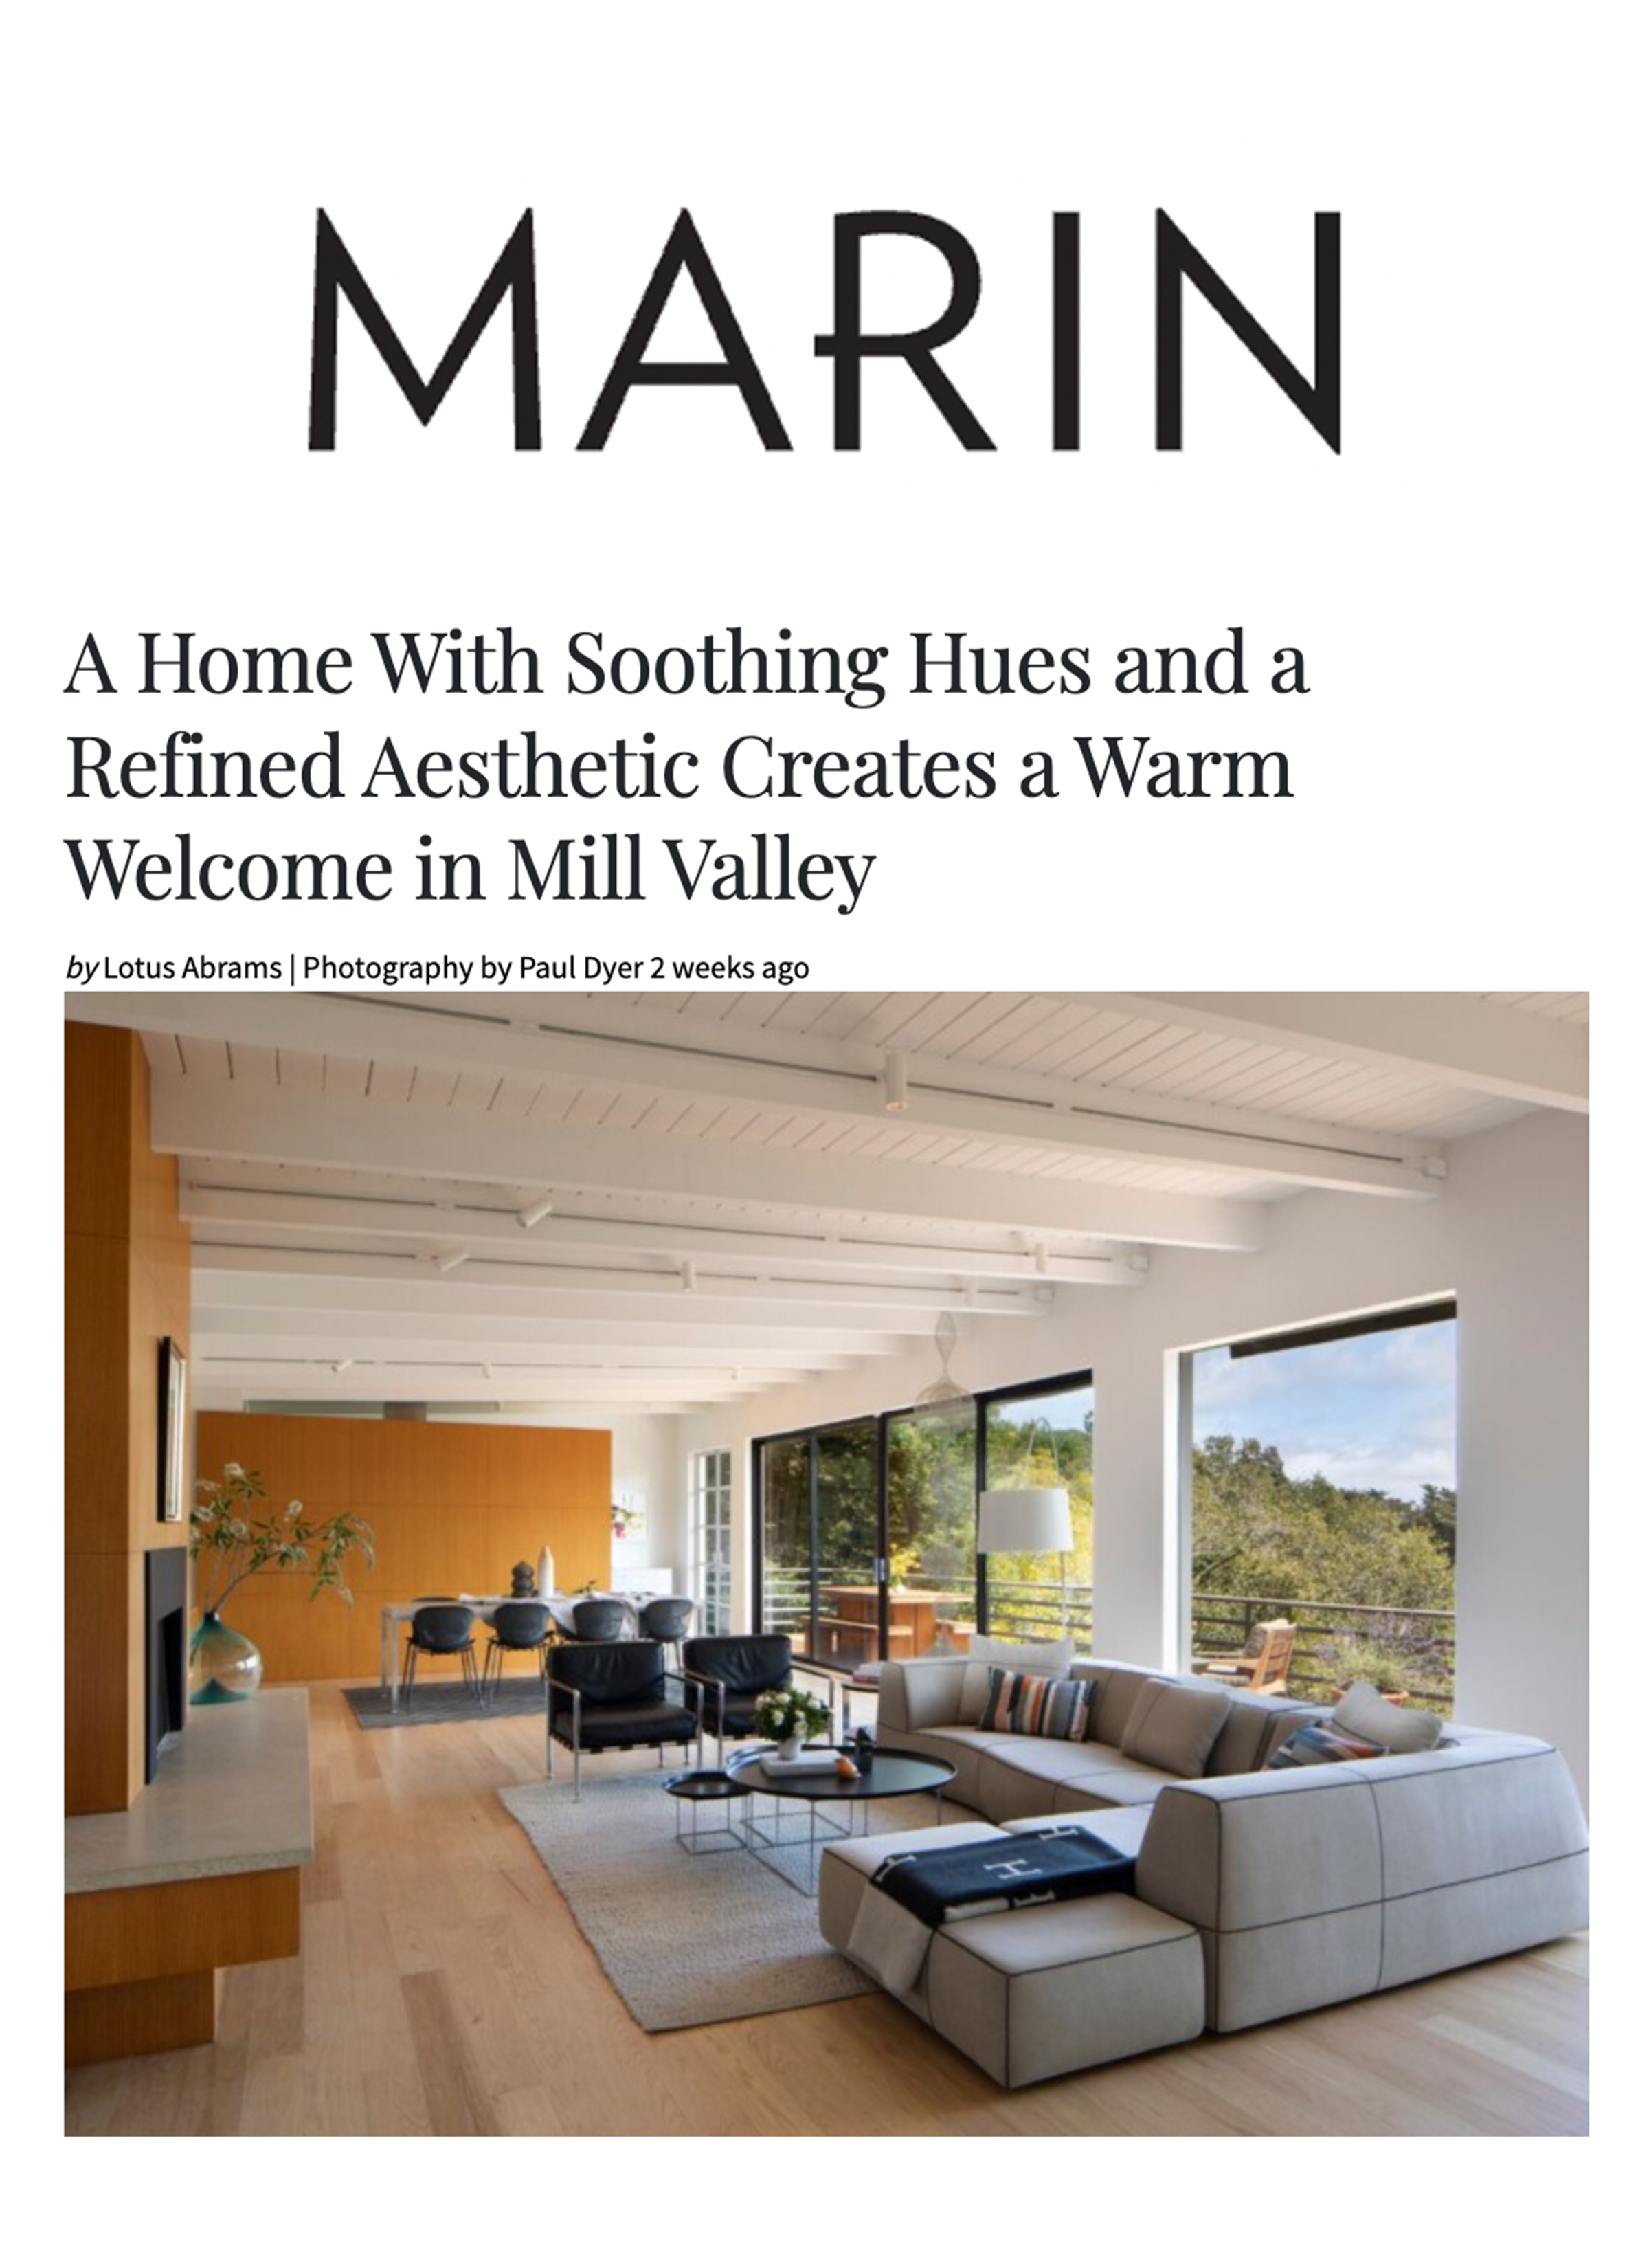 Marin Magazine August 2023